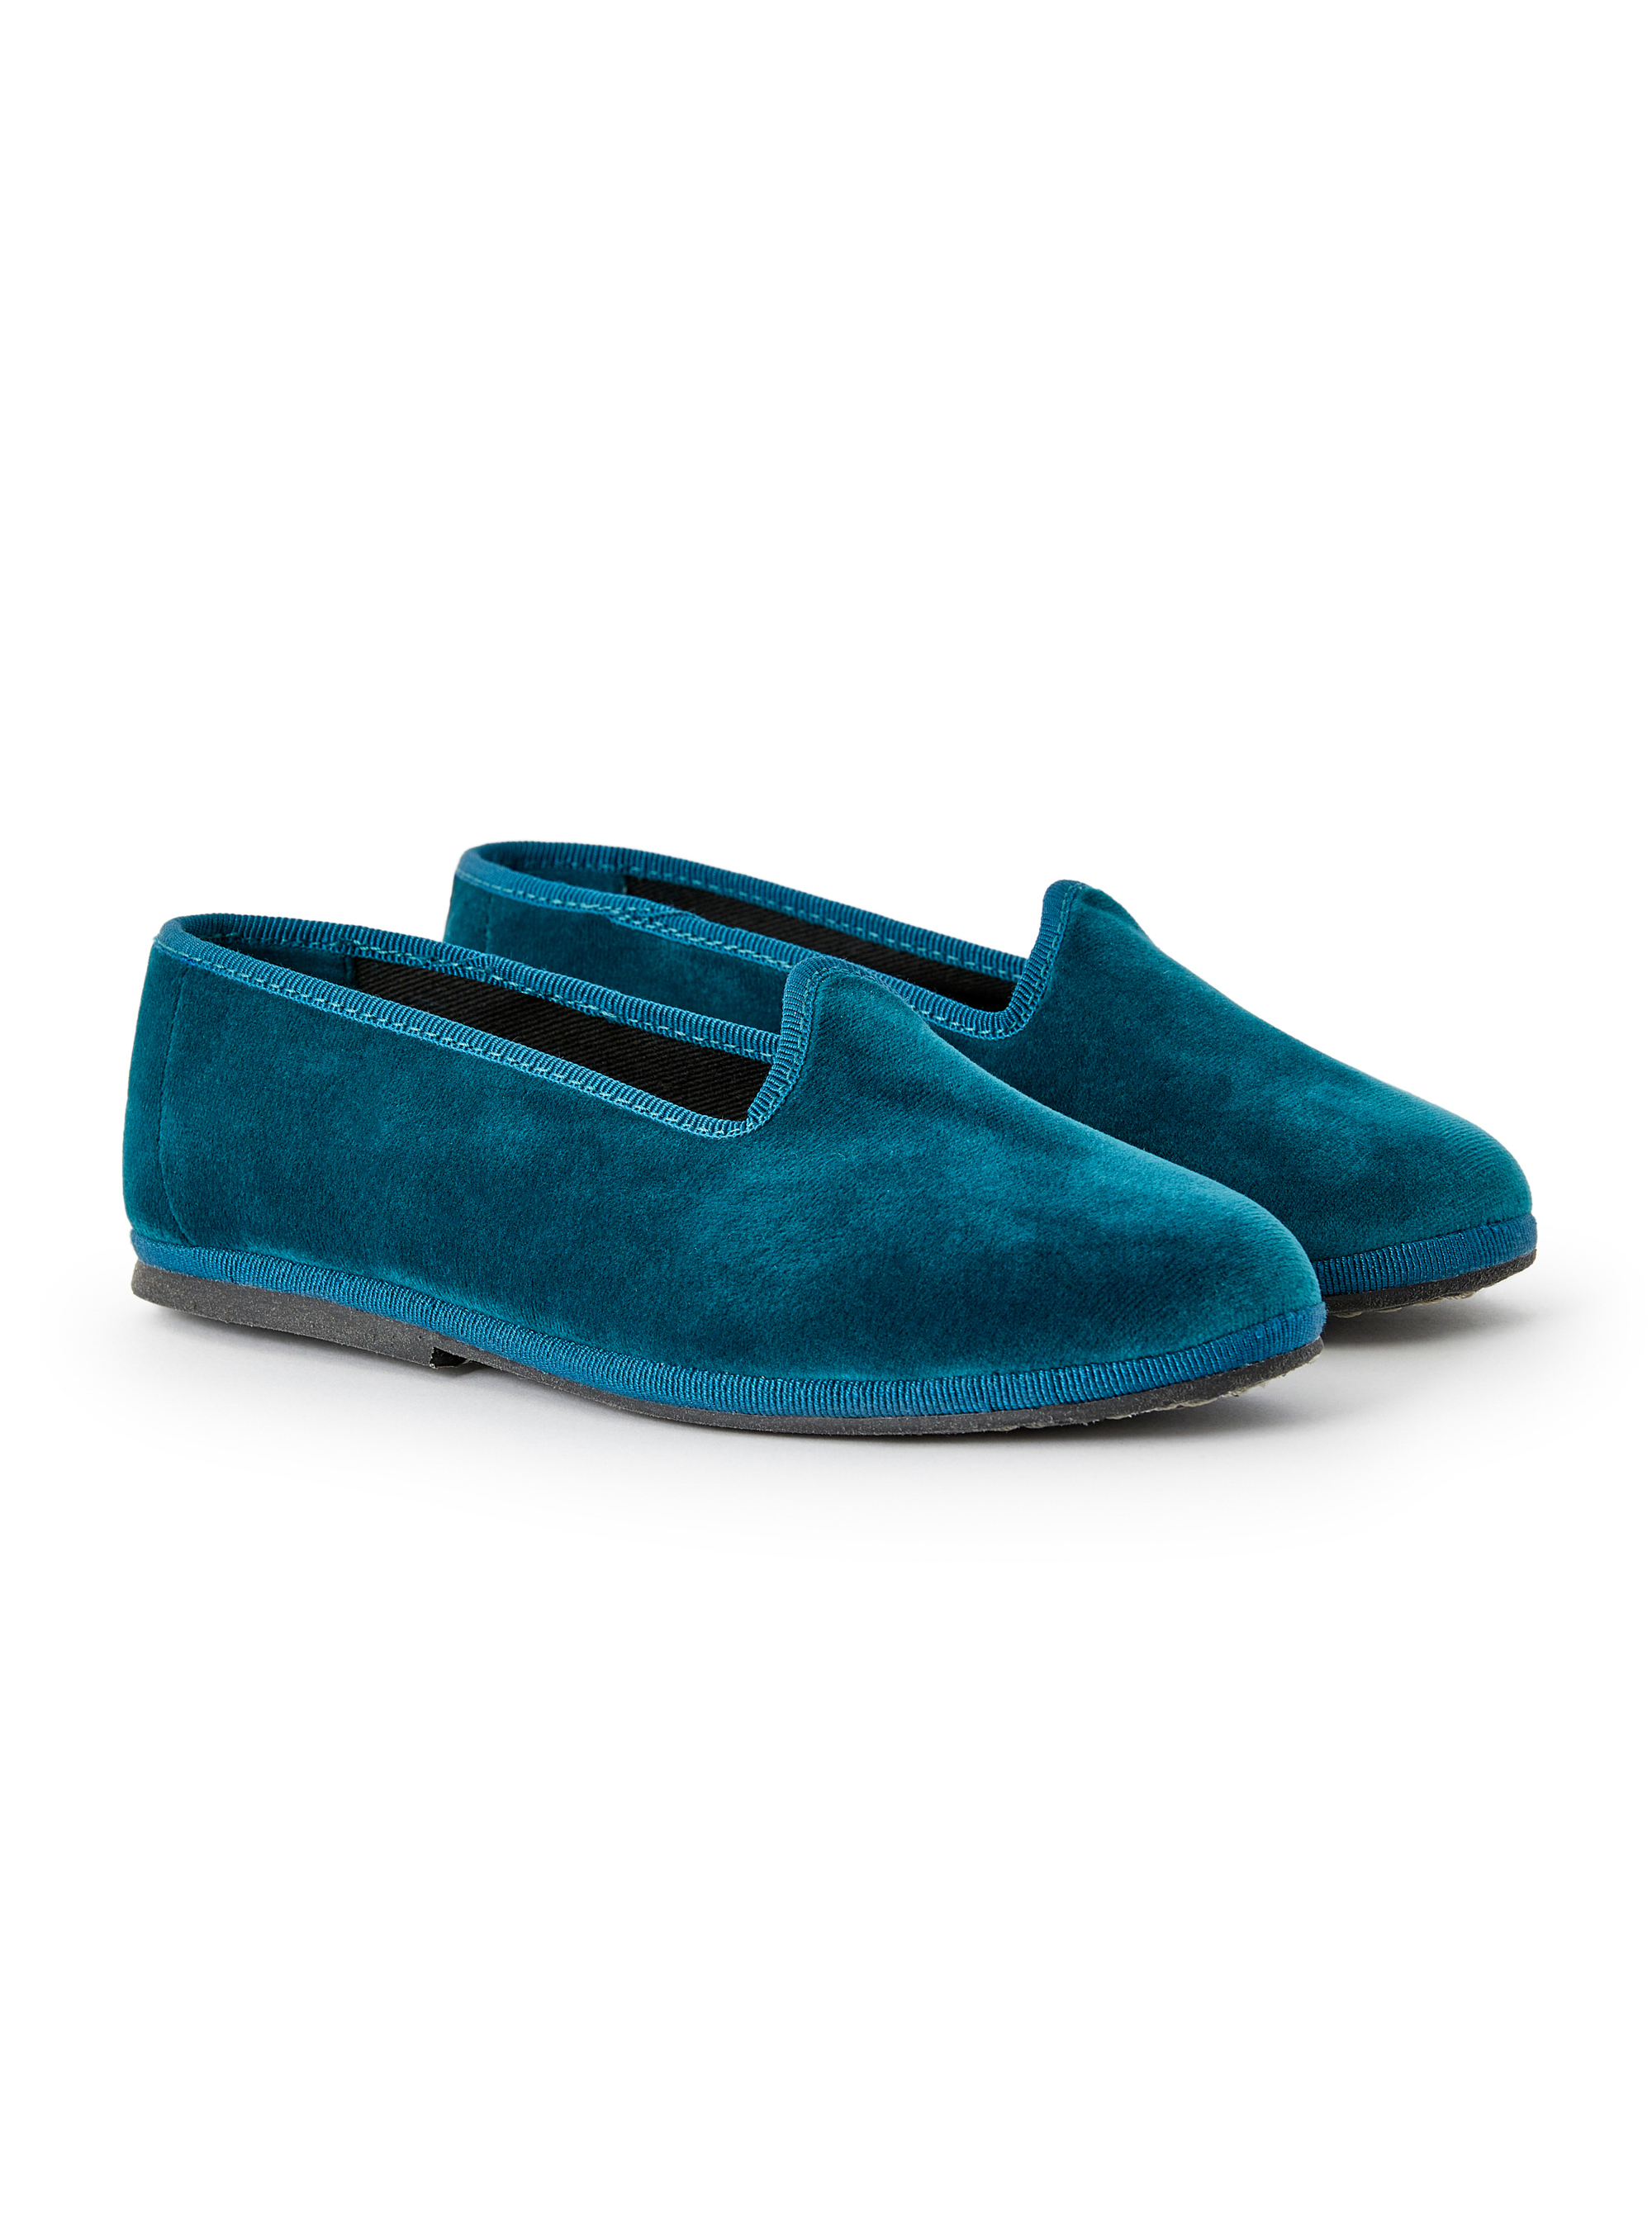 Teal velvet slippers - Shoes - Il Gufo